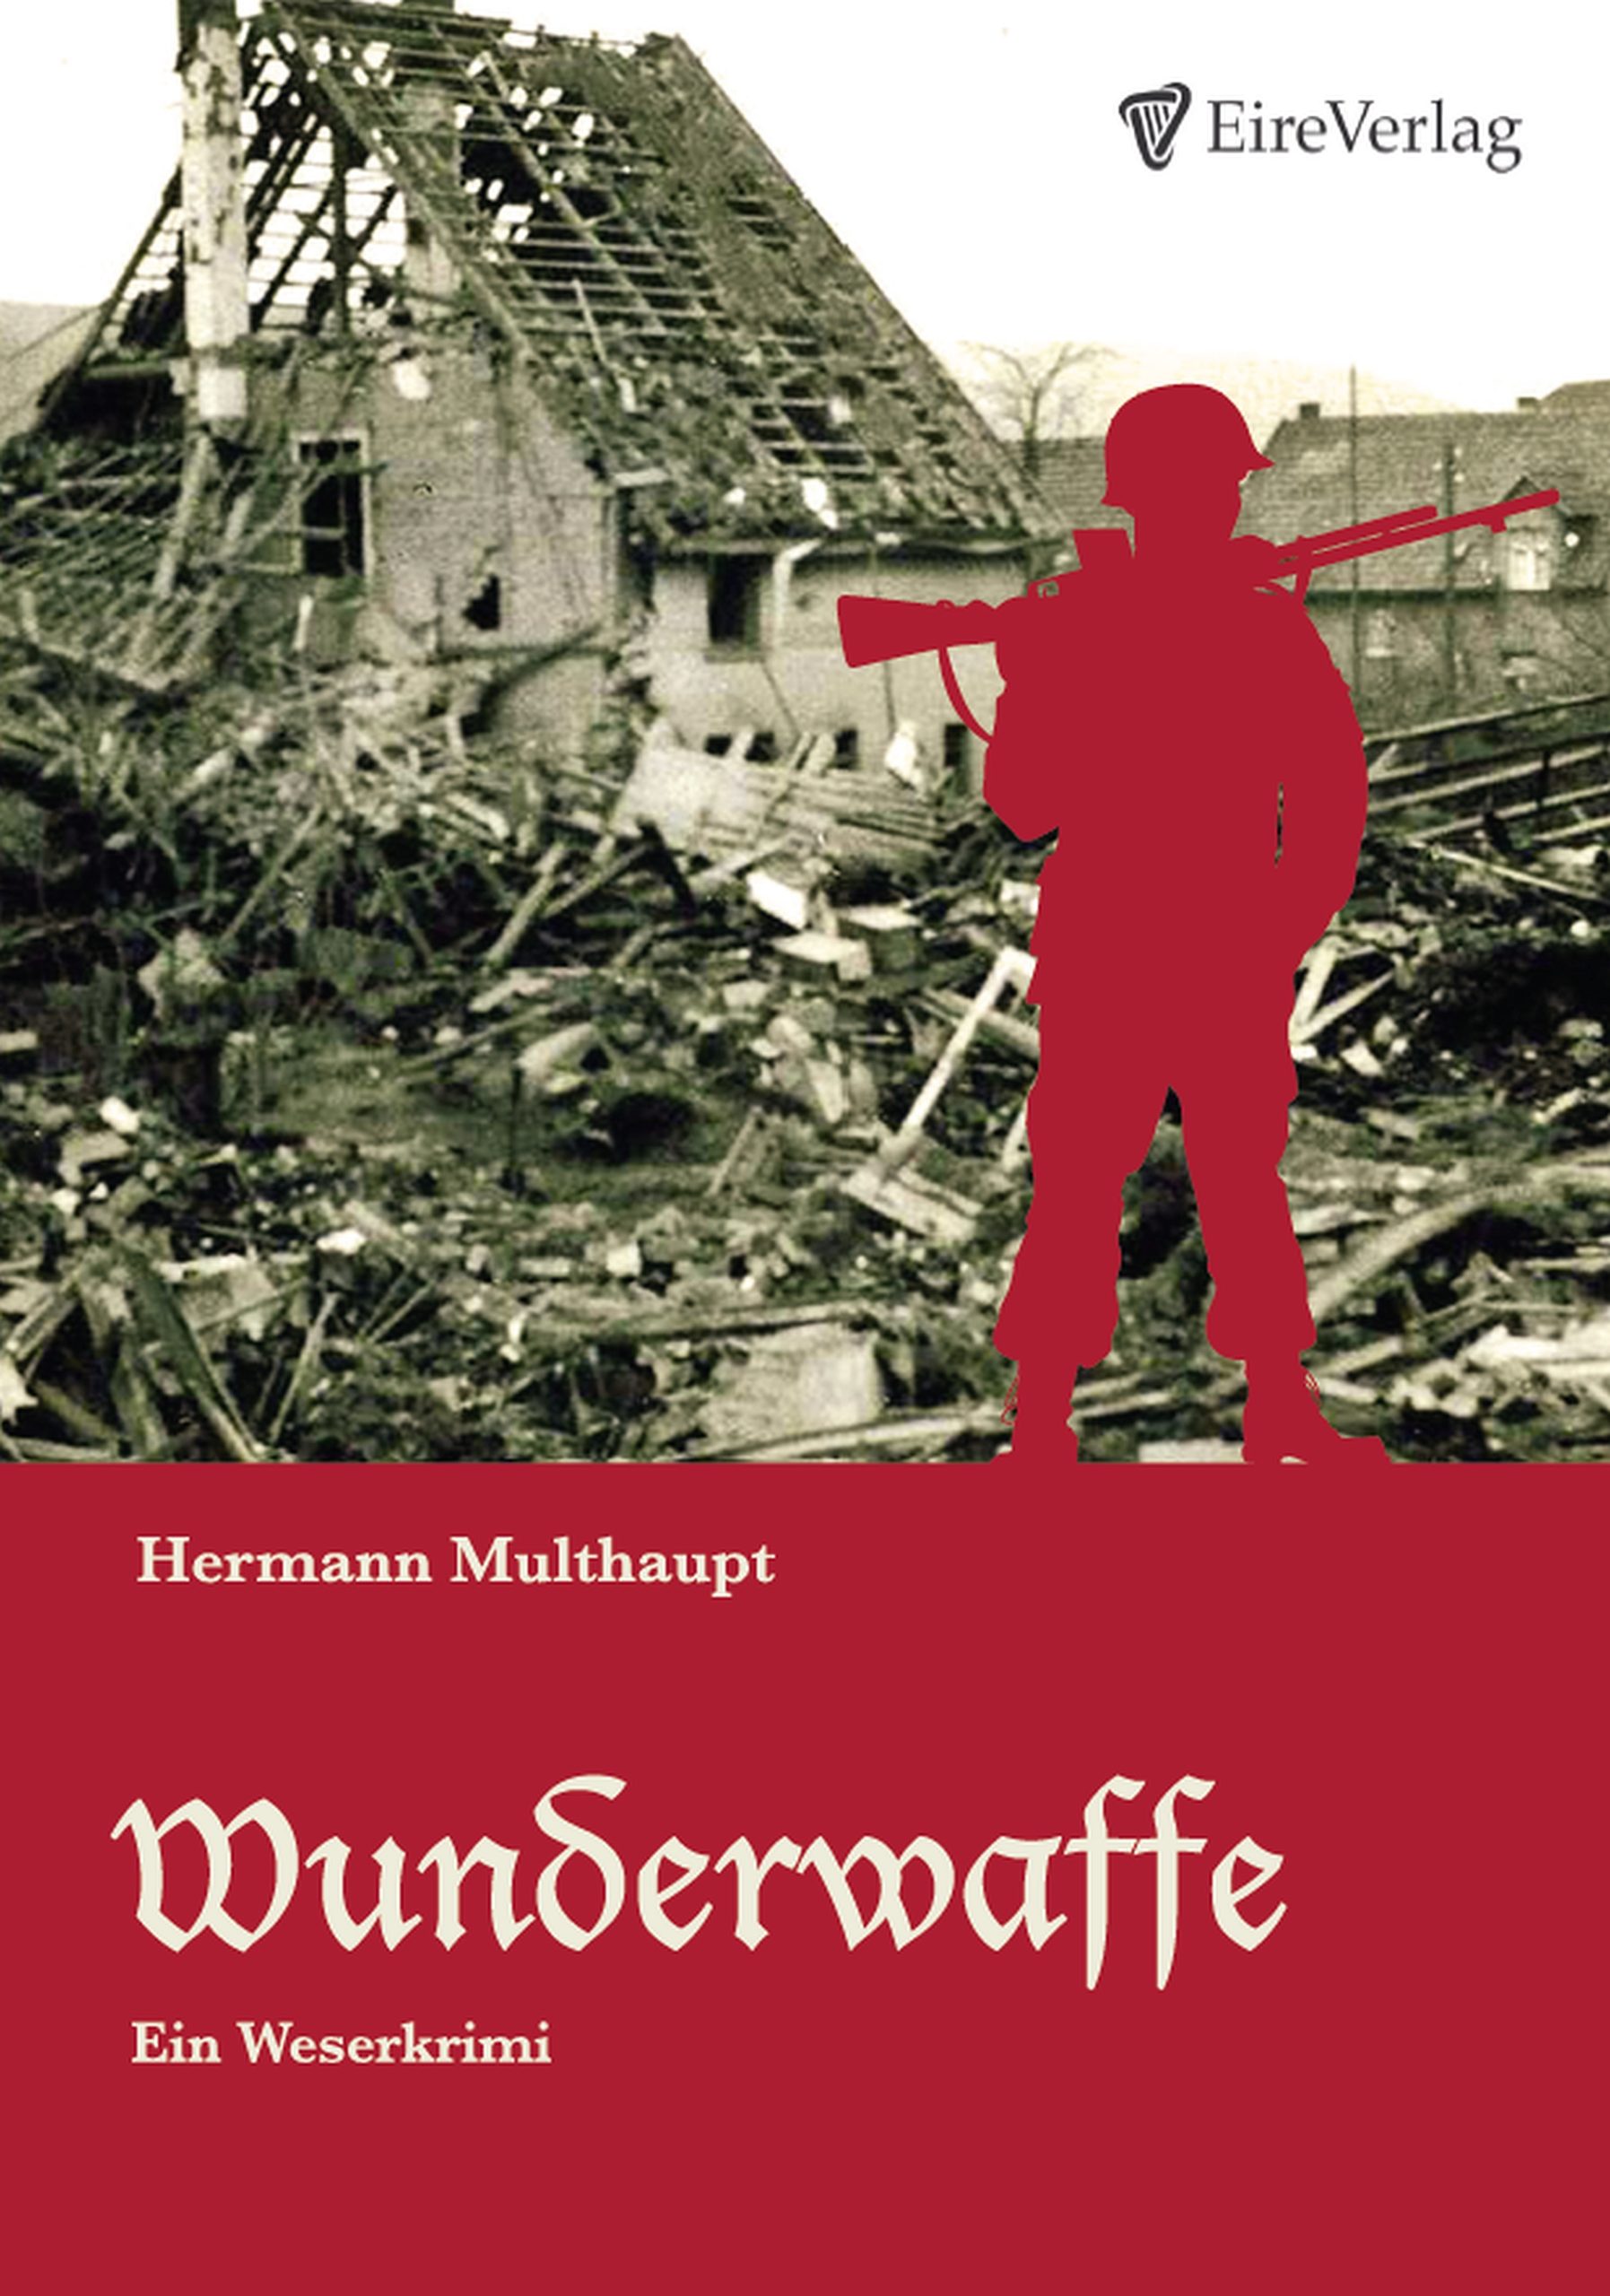 Wunderwaffe - Ein Weserkrimi - Hermann Multhaupt